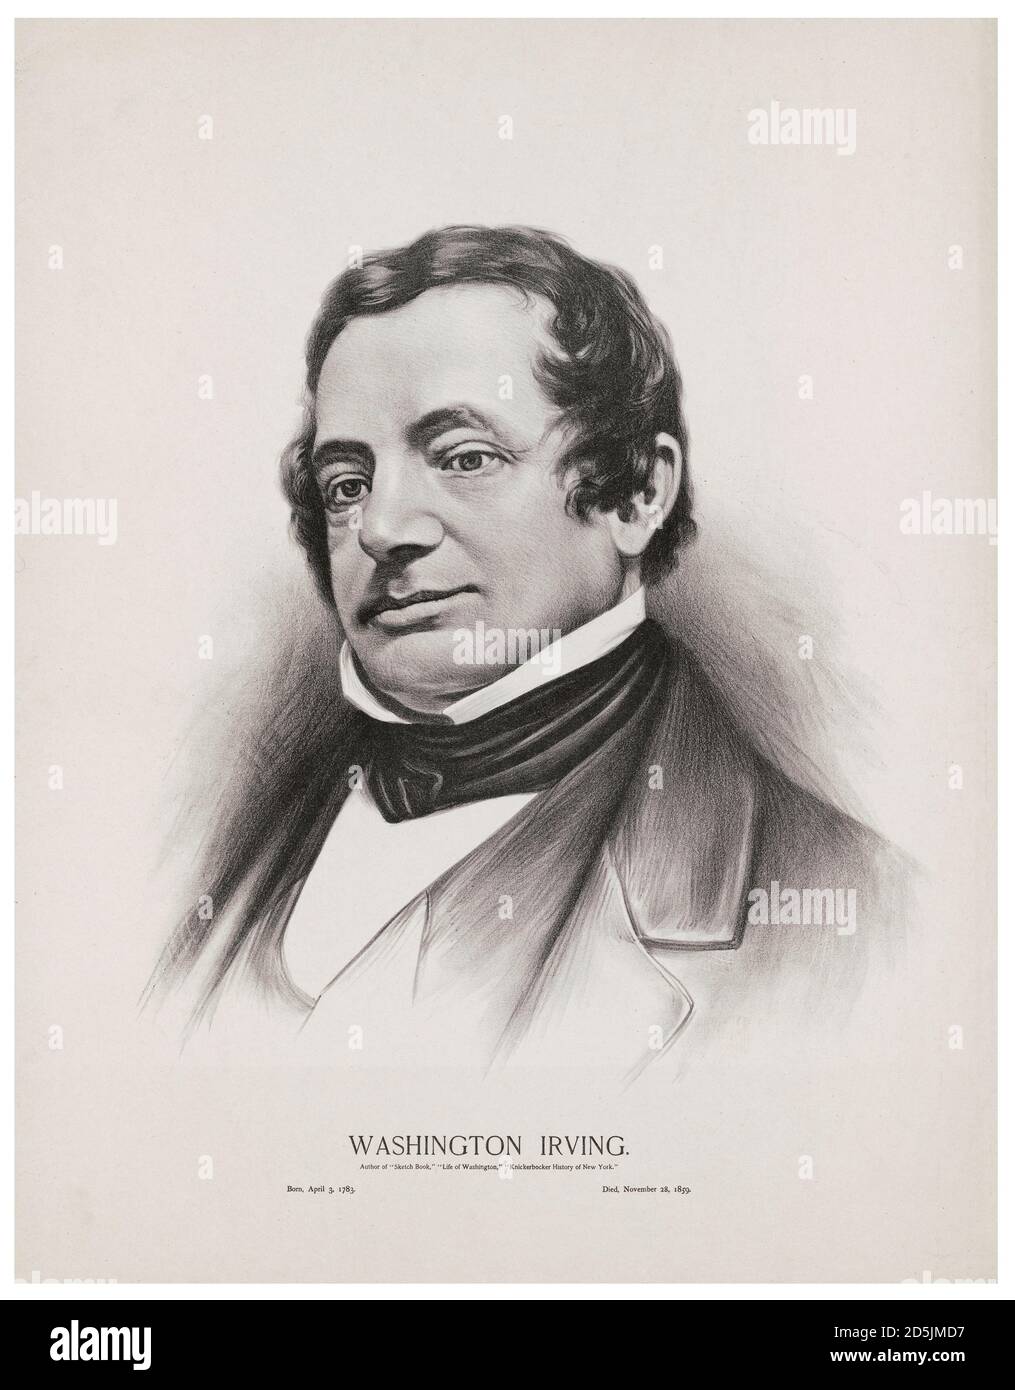 Porträt von Washington Irving. Washington Irving (1783 – 1859) war ein amerikanischer Kurzgeschichtenautor, Essayist, Biograph, Historiker und Diplomat von Th Stockfoto